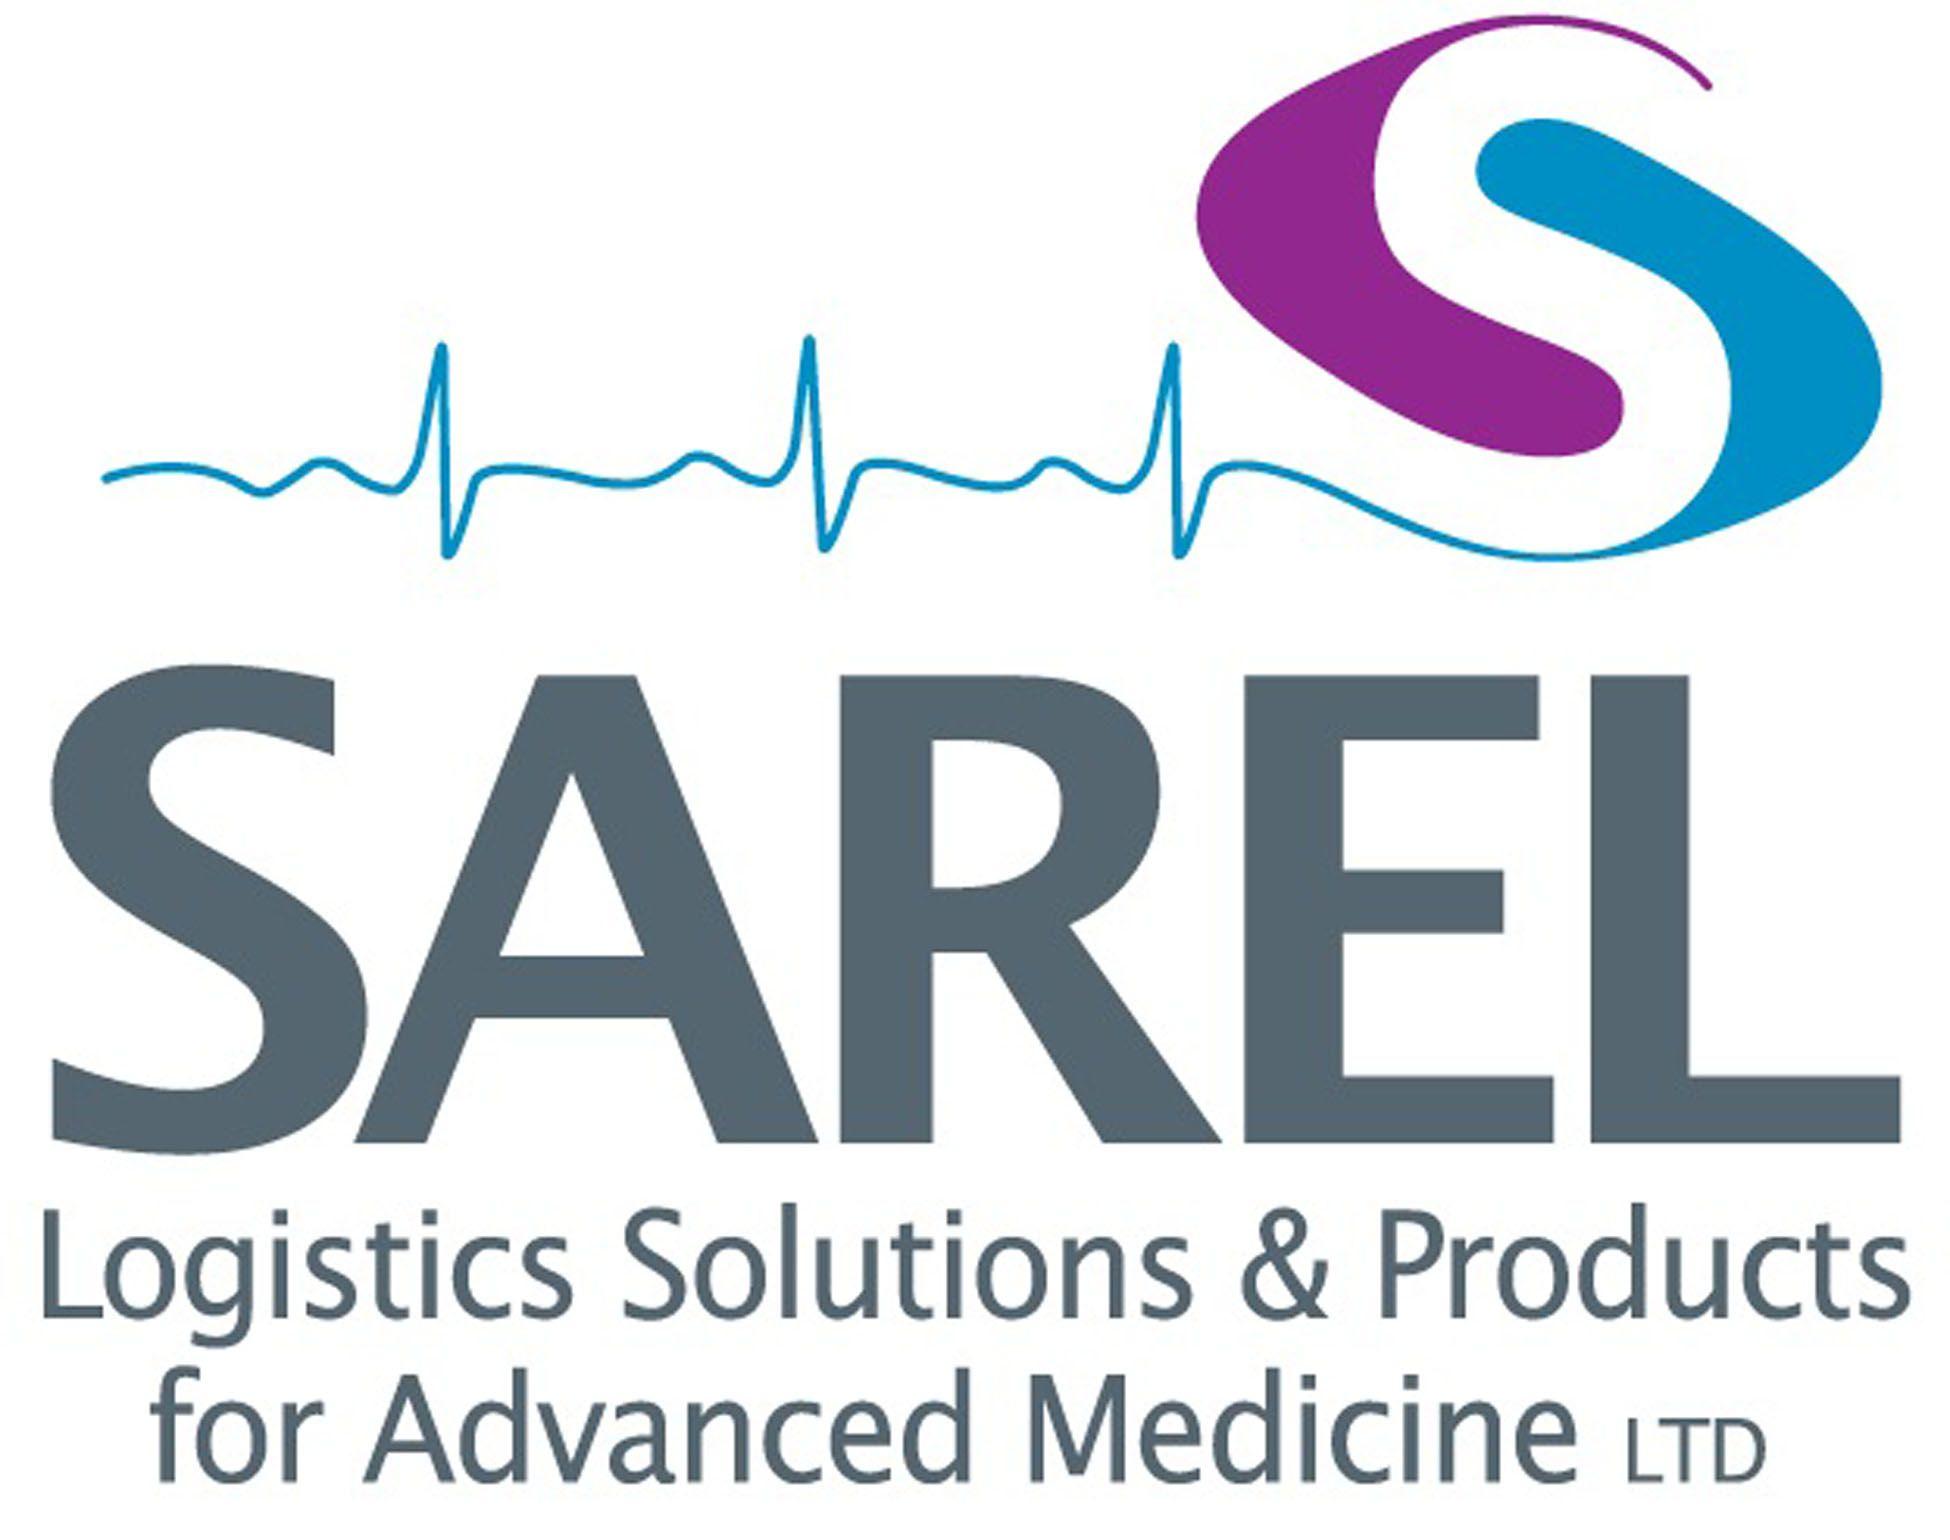 Advanced Medical Company Logo - SAREL Logistics Solutions & Products for Advanced Medicine